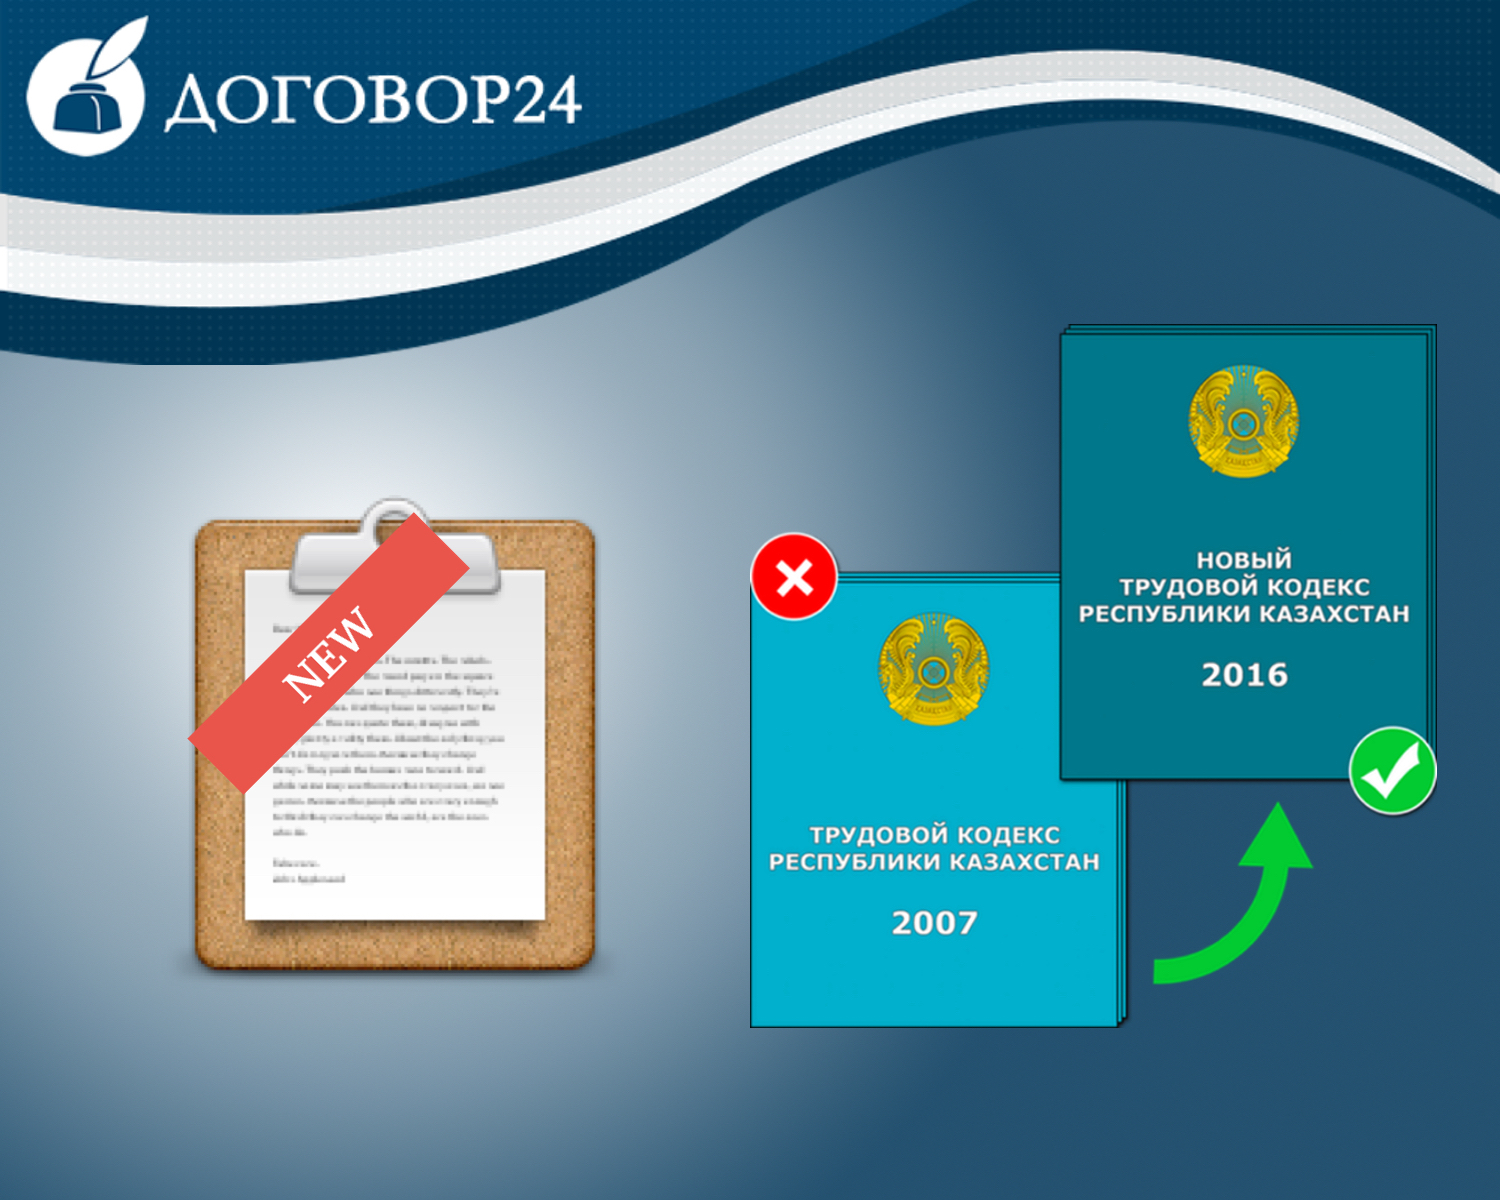 Новые документы и процедуры в соответствии с Трудовым Кодексом Республики Казахстан 2016 года